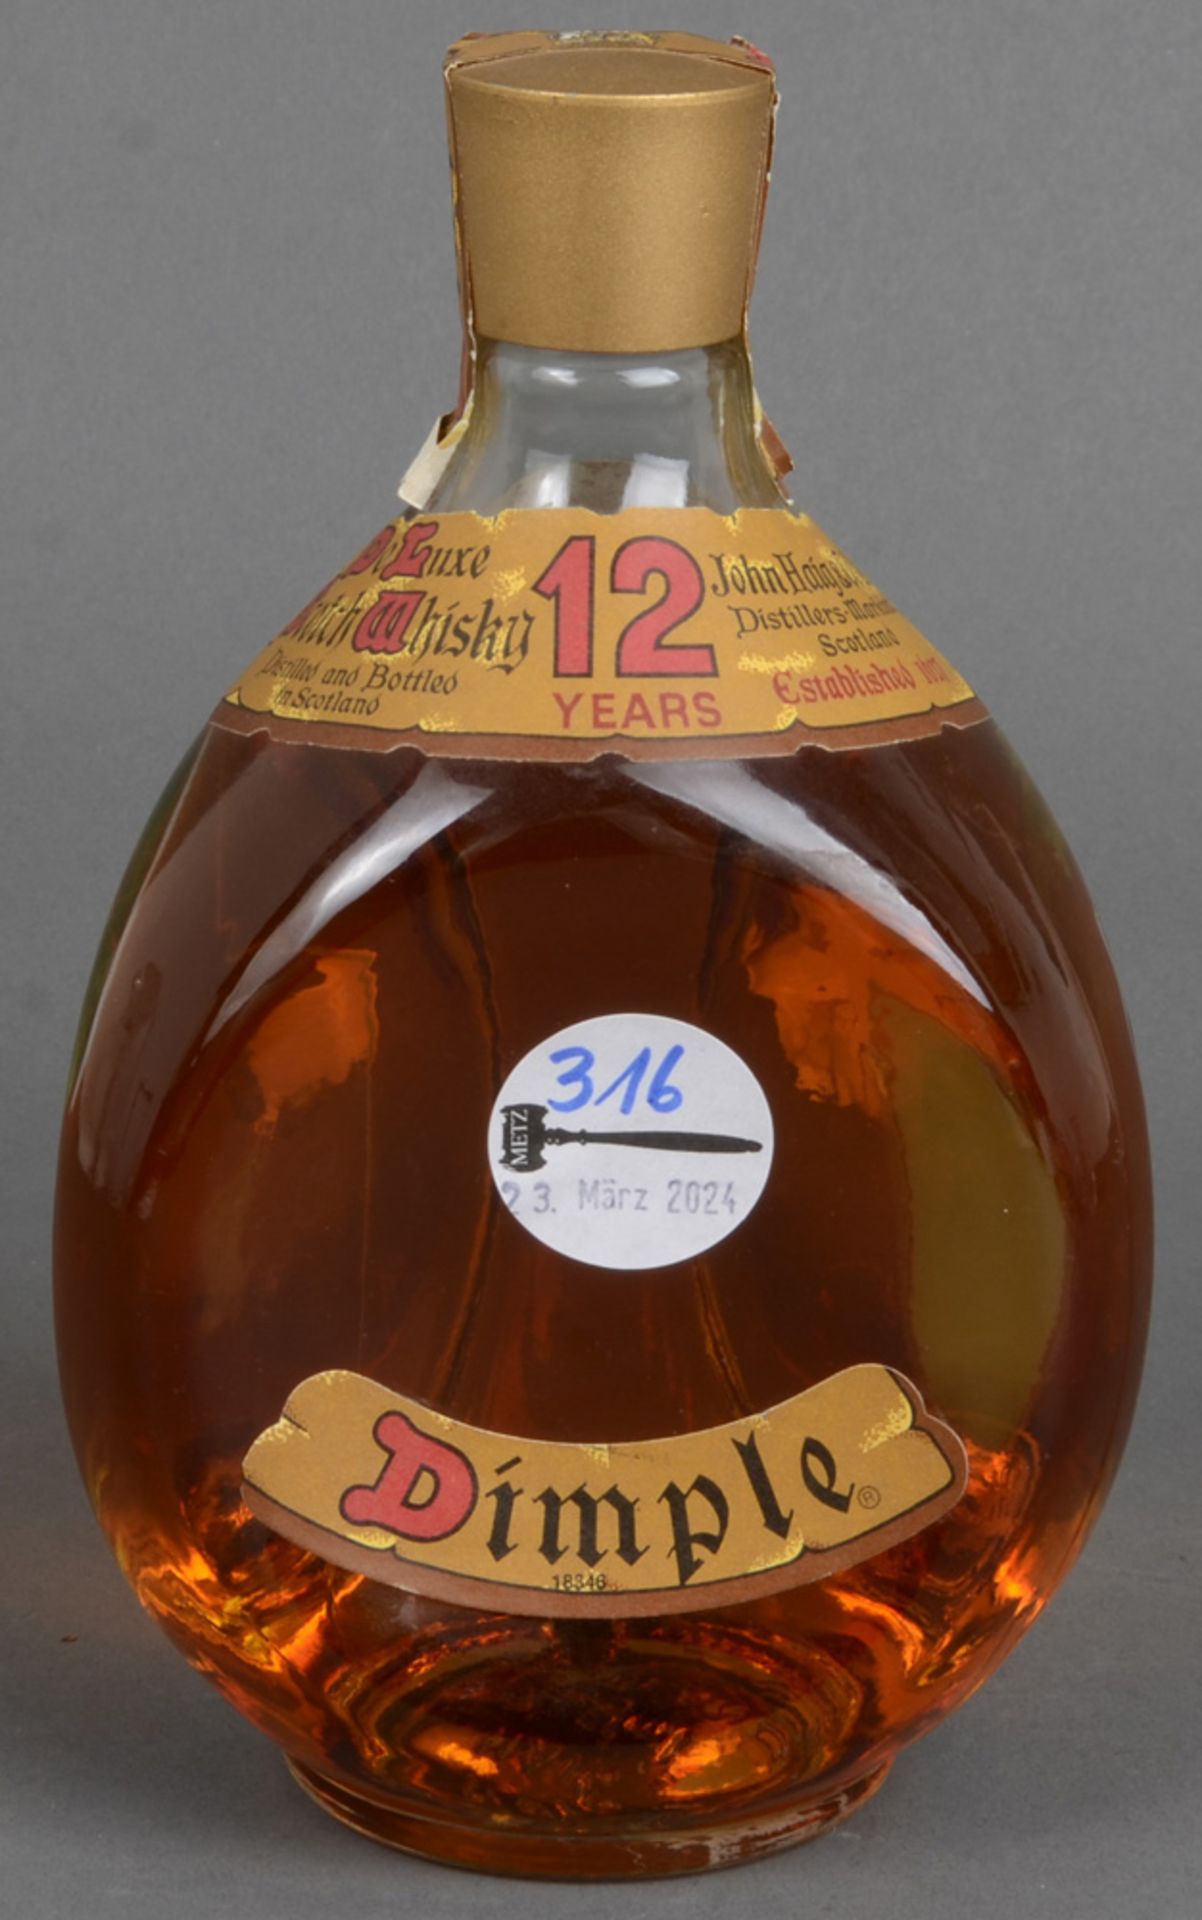 Eine Flasche „Dimple, 12 Years old Whisky“. Für die Genießbarkeit und Lagerung übernehmen wir